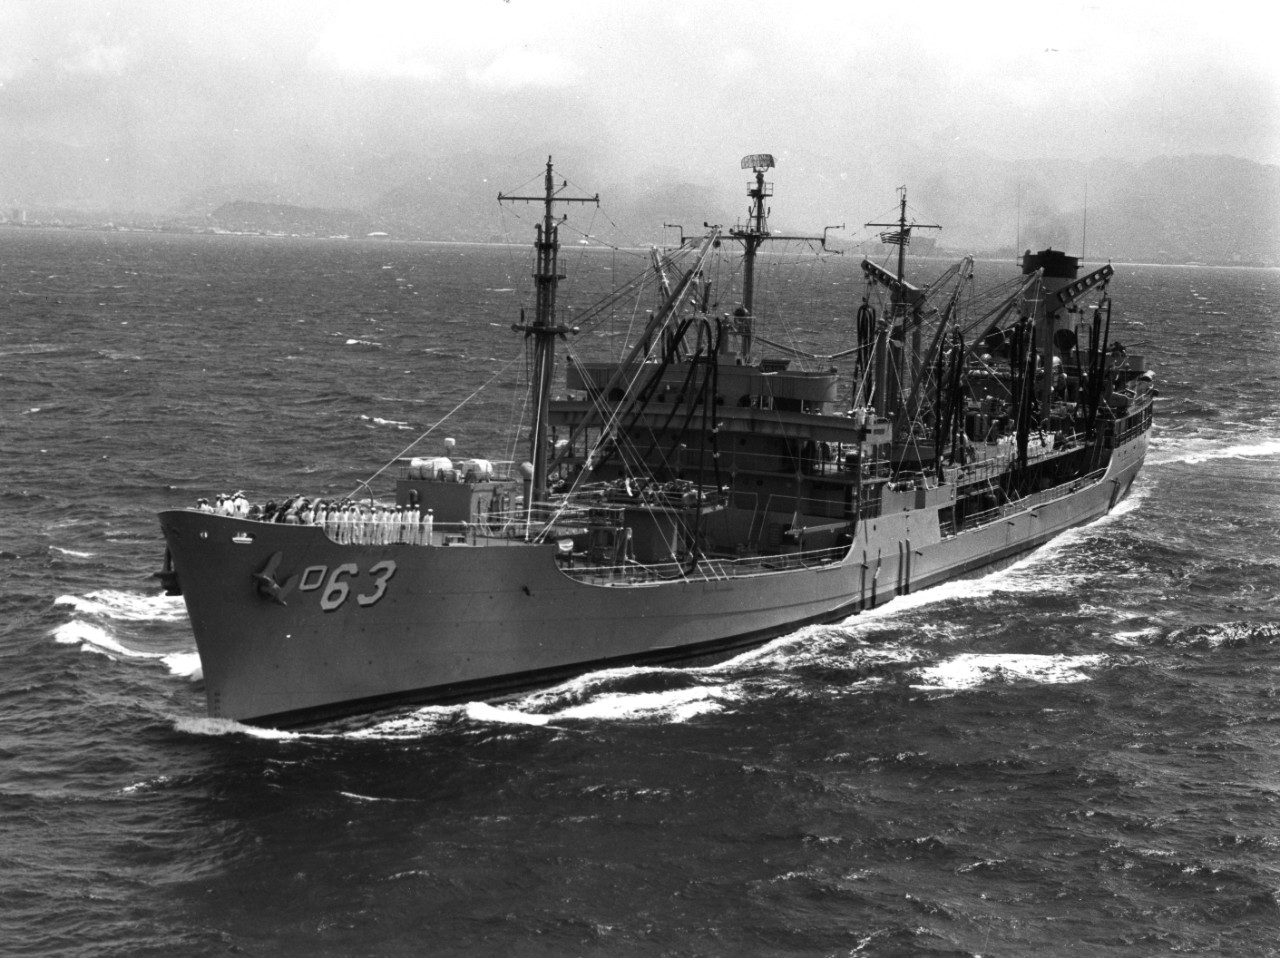 USS Chipola (AO-63) underway off the coast of Oahu, Hawaii